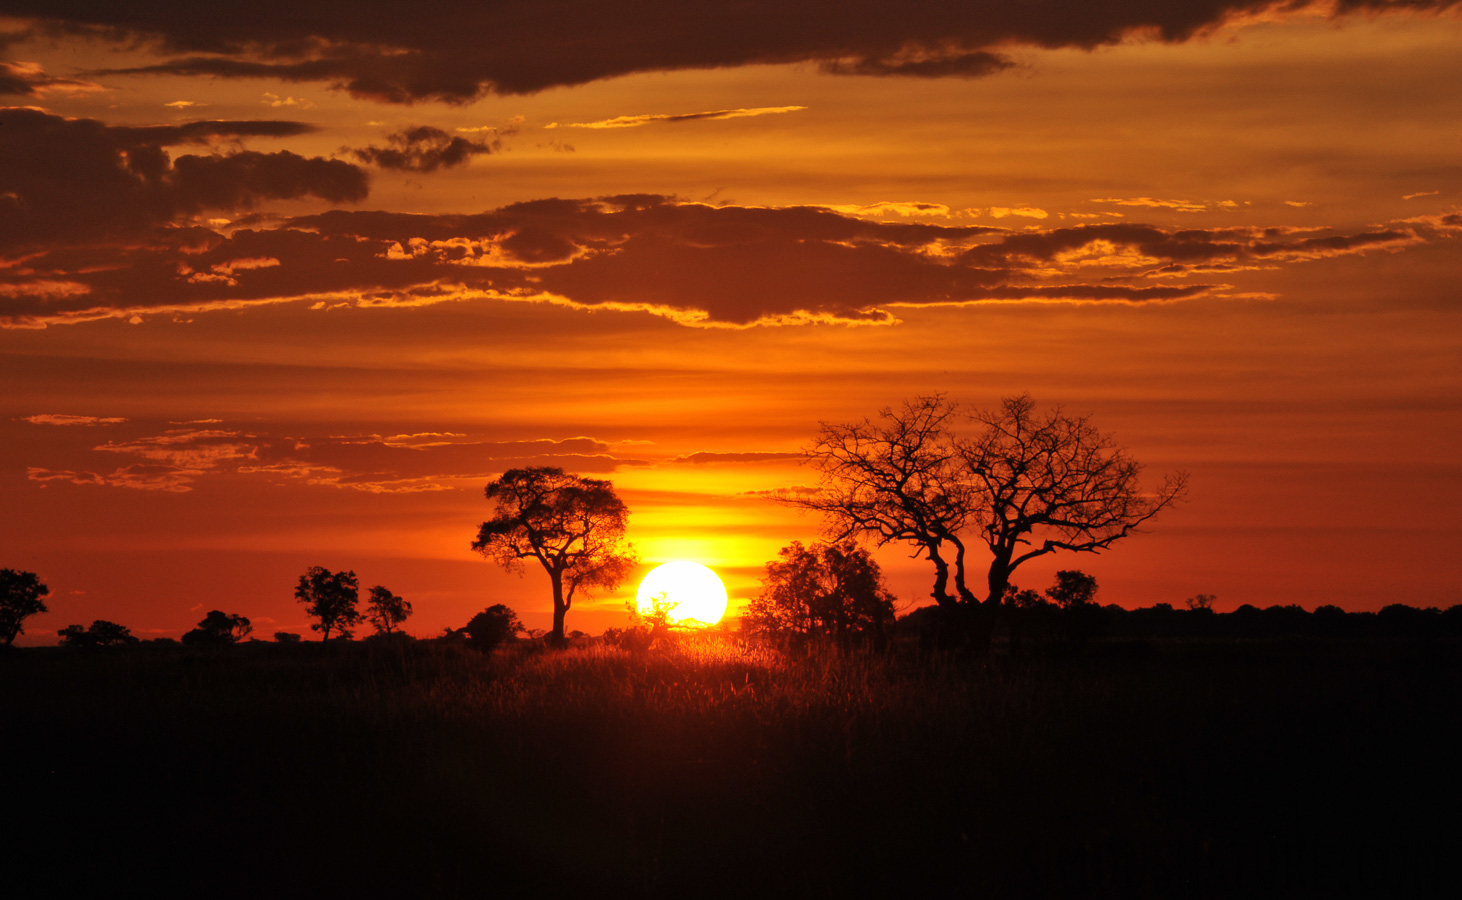 Okavango Delta [250 mm, 1/250 sec at f / 32, ISO 800]